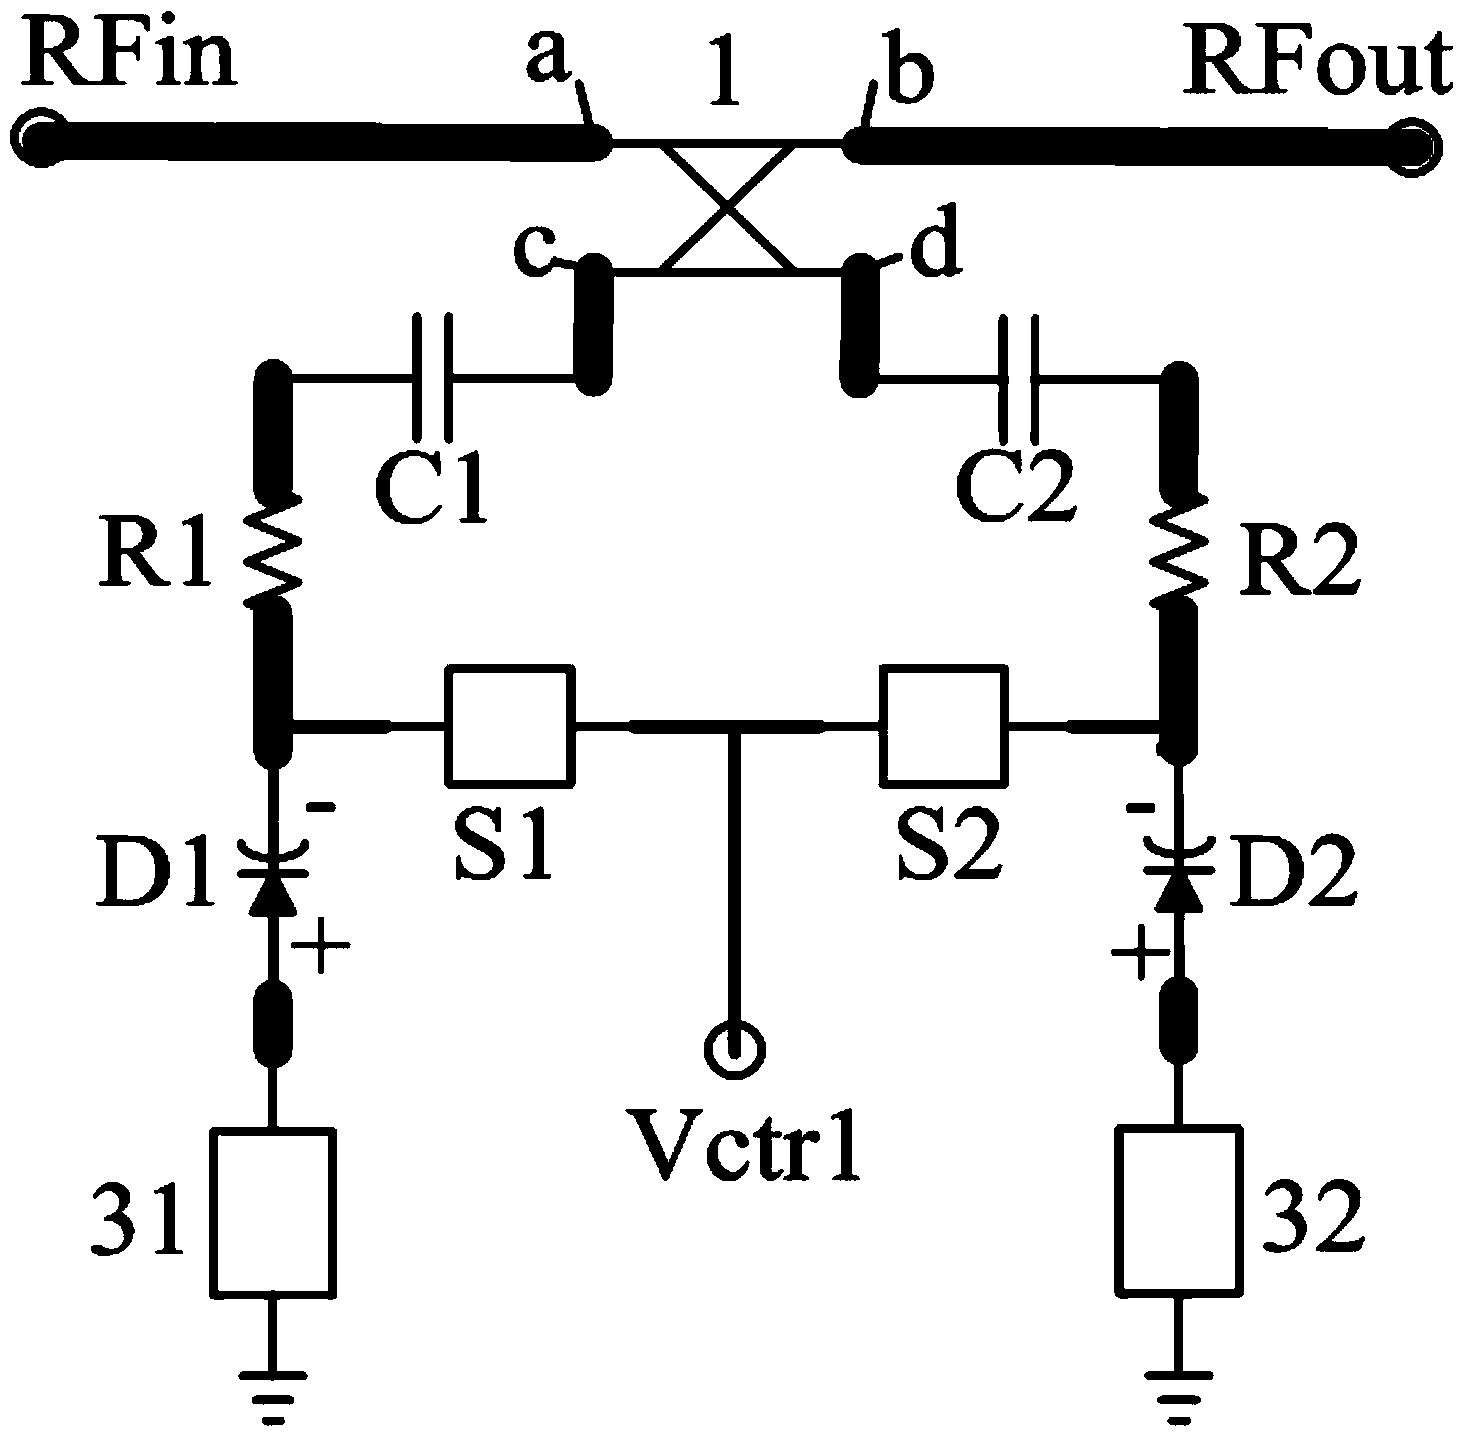 Quadric curve voltage-adjustment gain equalization circuit